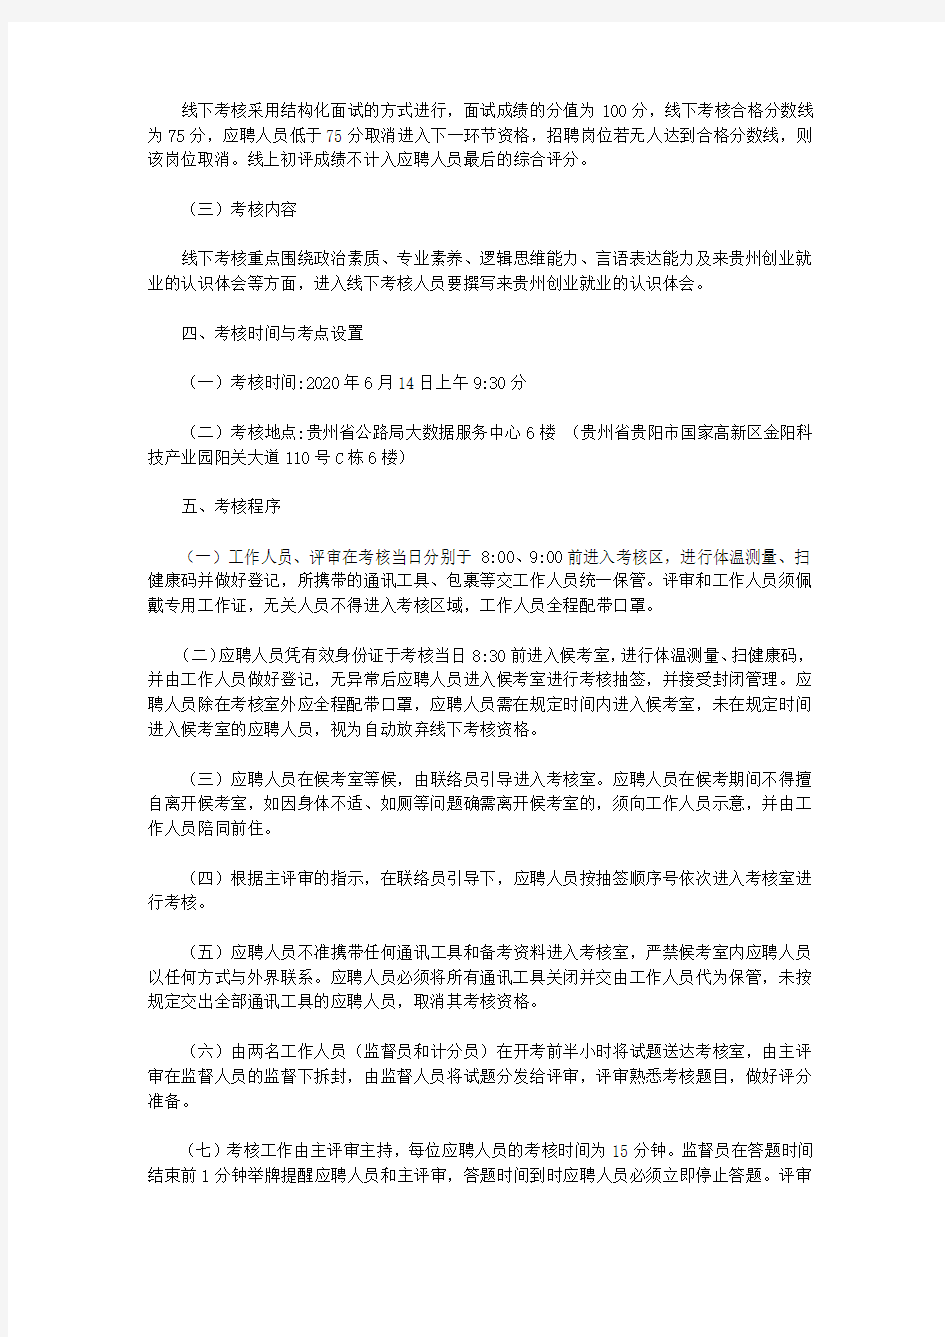 贵州省公路局大数据服务中心第八届贵州人才博览会事业单位引进人才线下考核方案(2020)